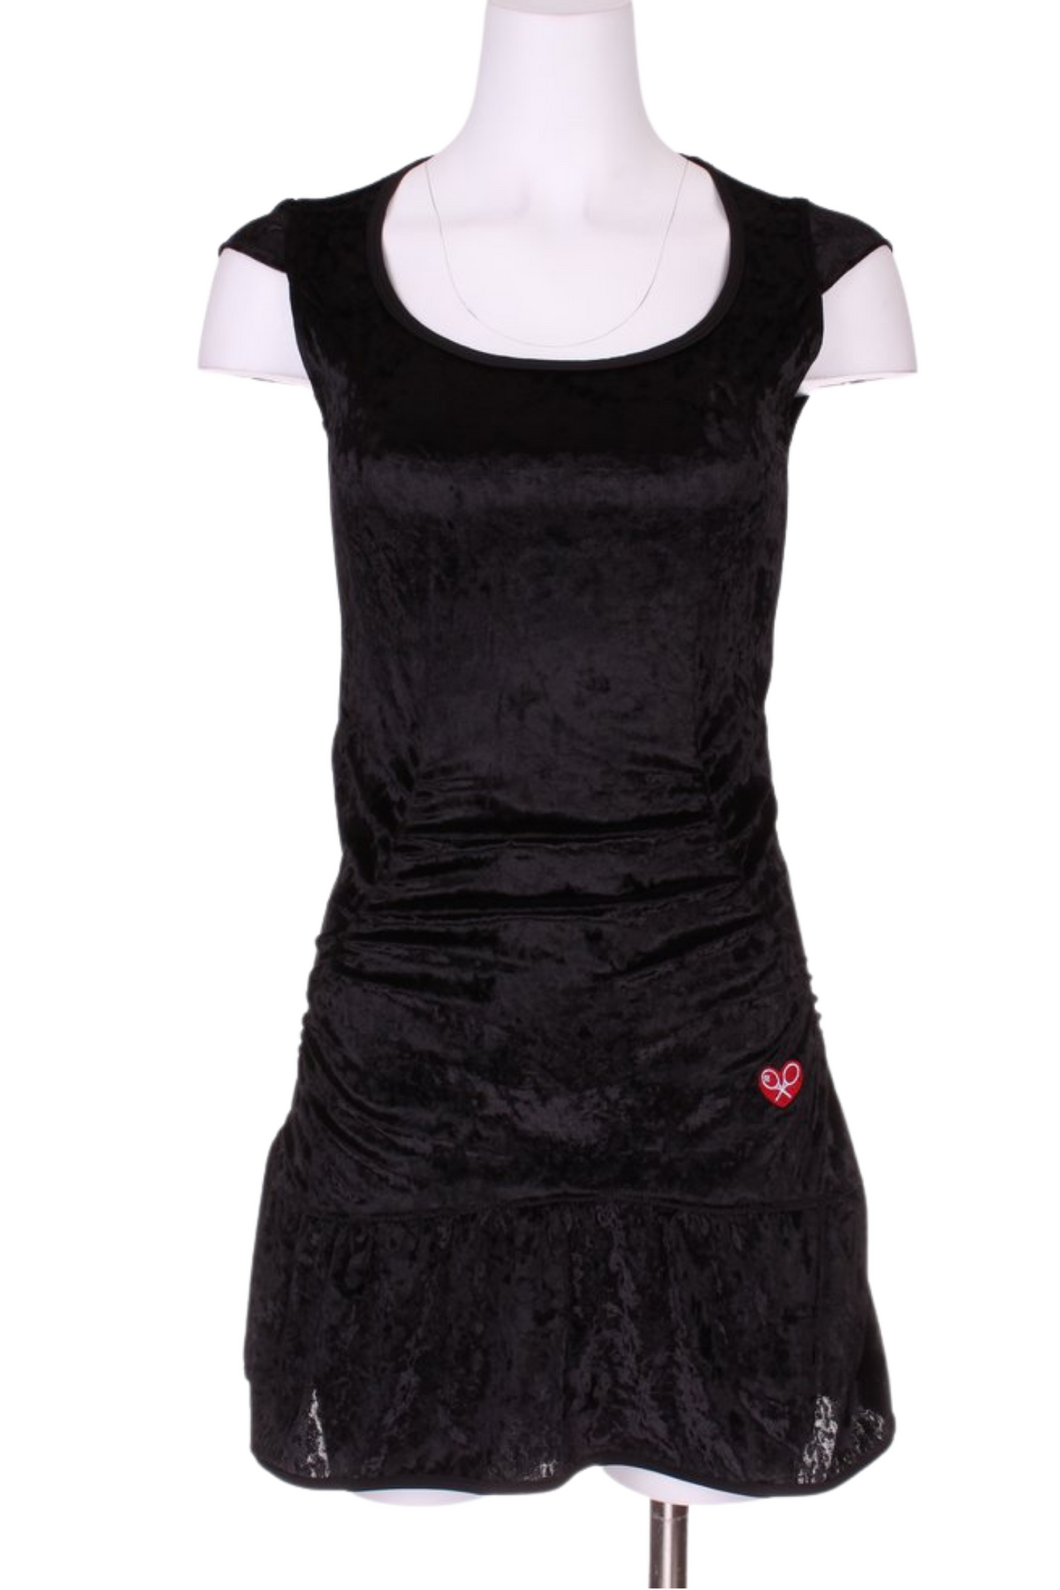 Monroe Black Crushed Velvet Tennis Dress - I LOVE MY DOUBLES PARTNER!!!